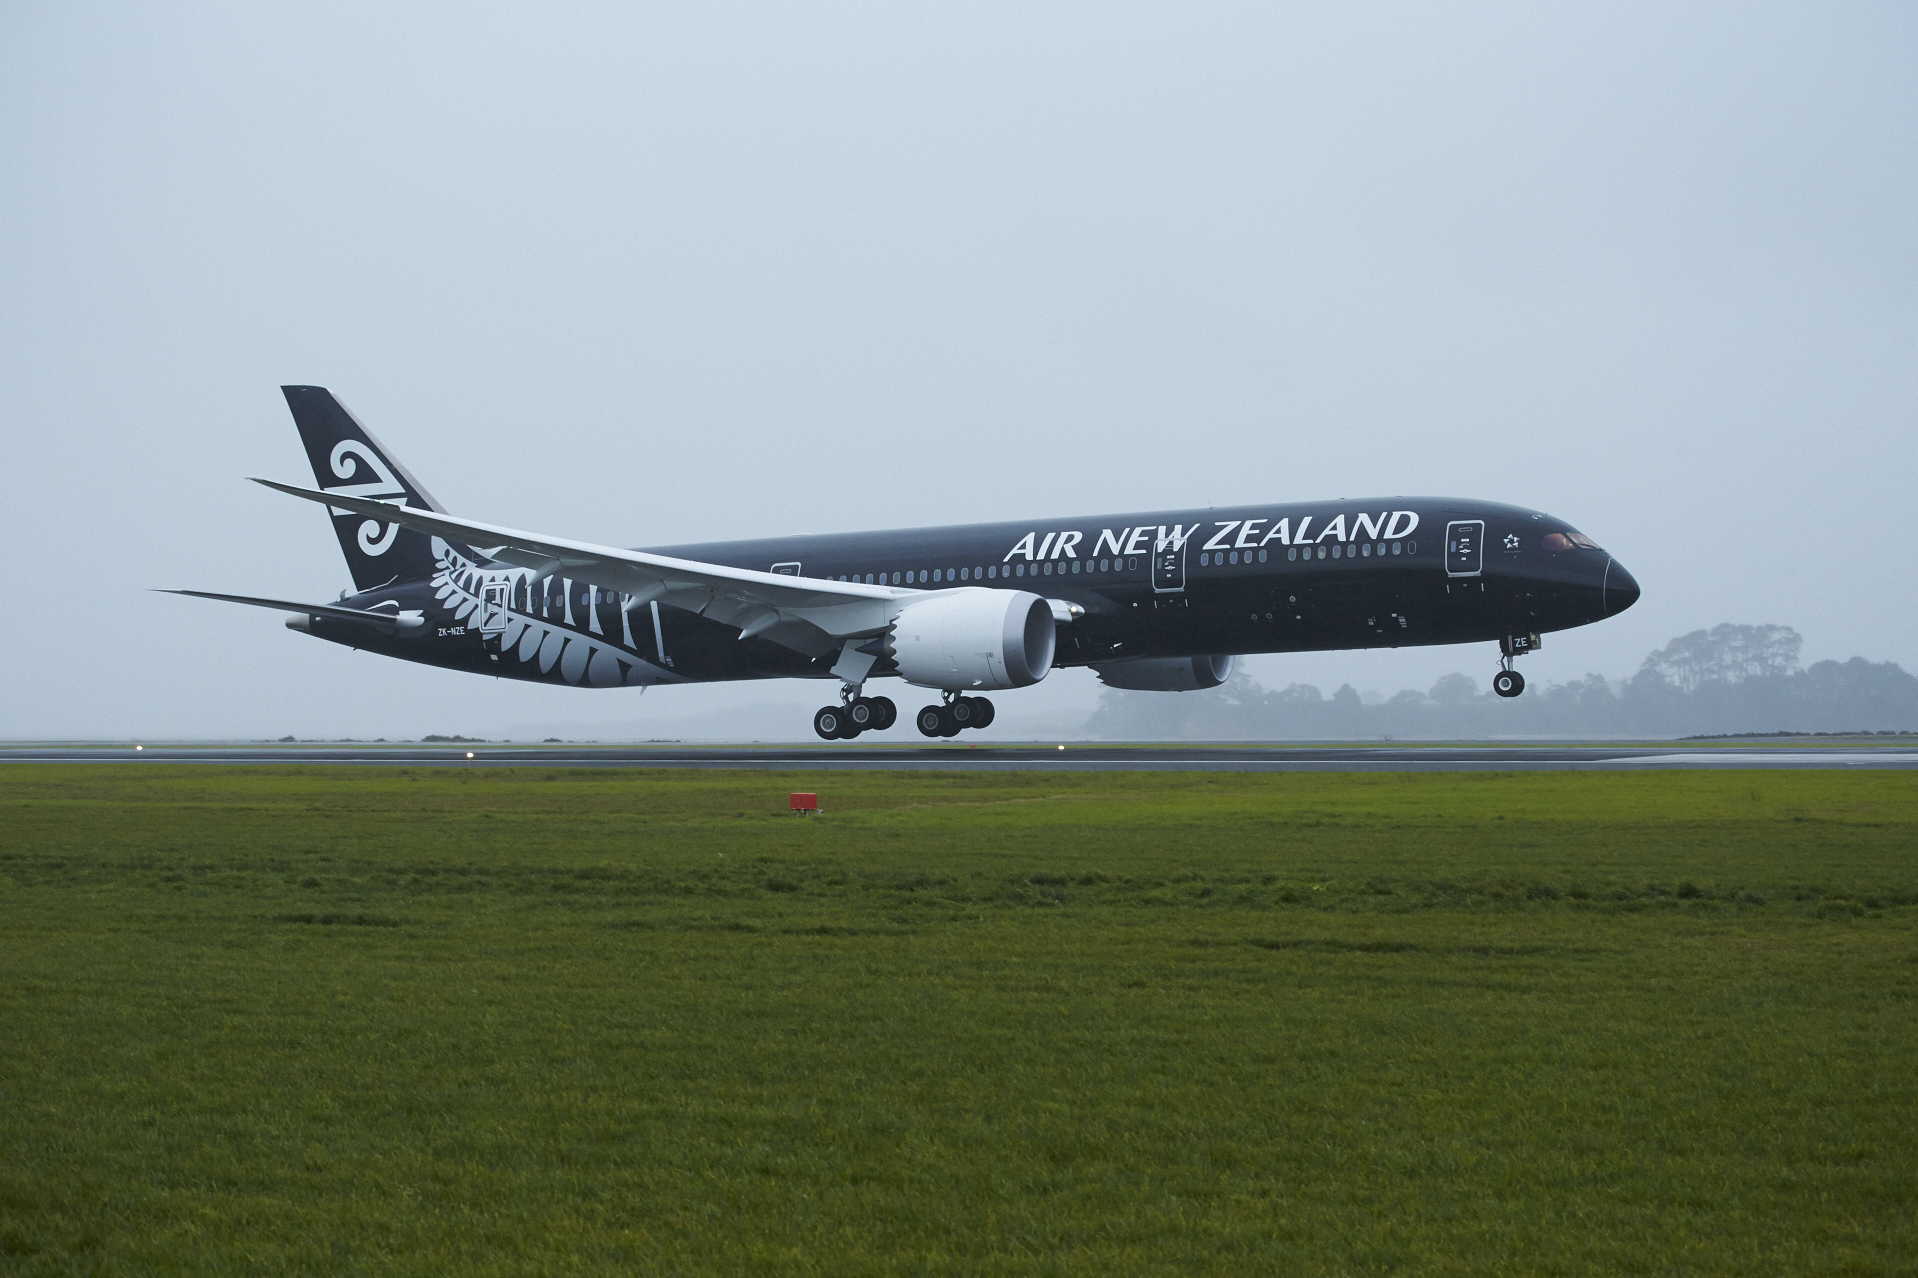 A mindkét listán jó helyen szereplő társaságok egyike az Air New Zealand